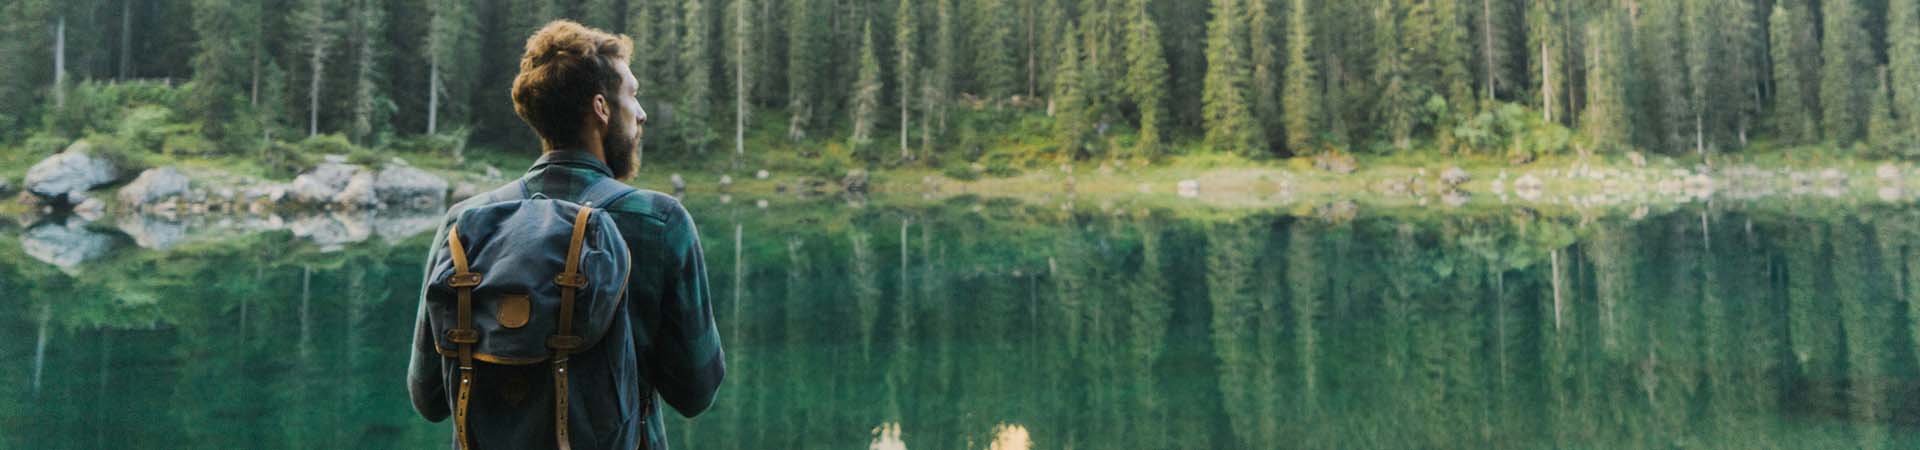 Wędrowiec odpoczywa podziwiając widok na jezioro w górach, otoczone lasem.